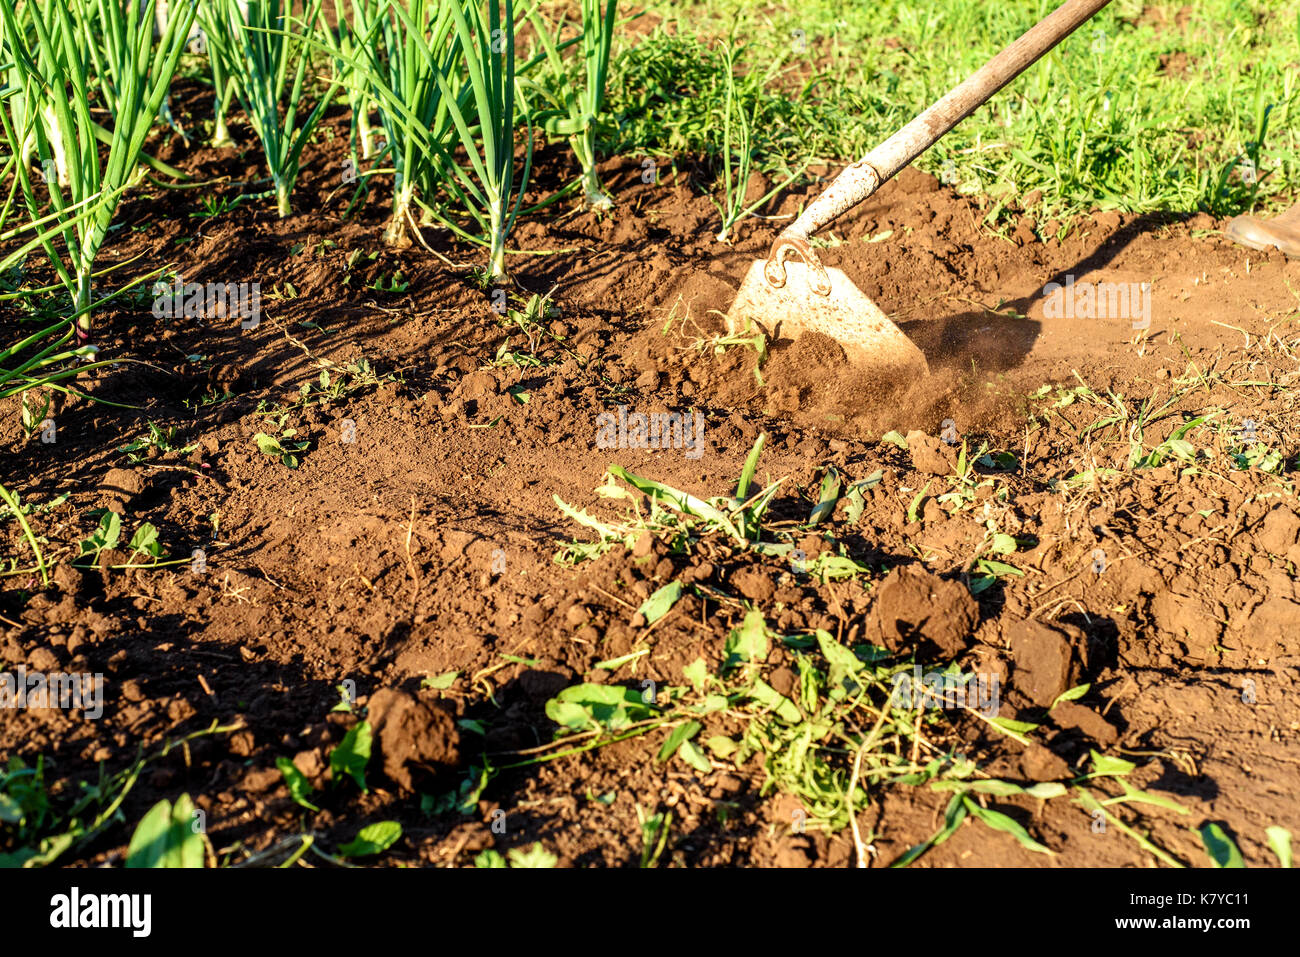 Giardino zappa con movimento ripulendo dalle erbacce un'area giardino e percorso sporco Foto Stock